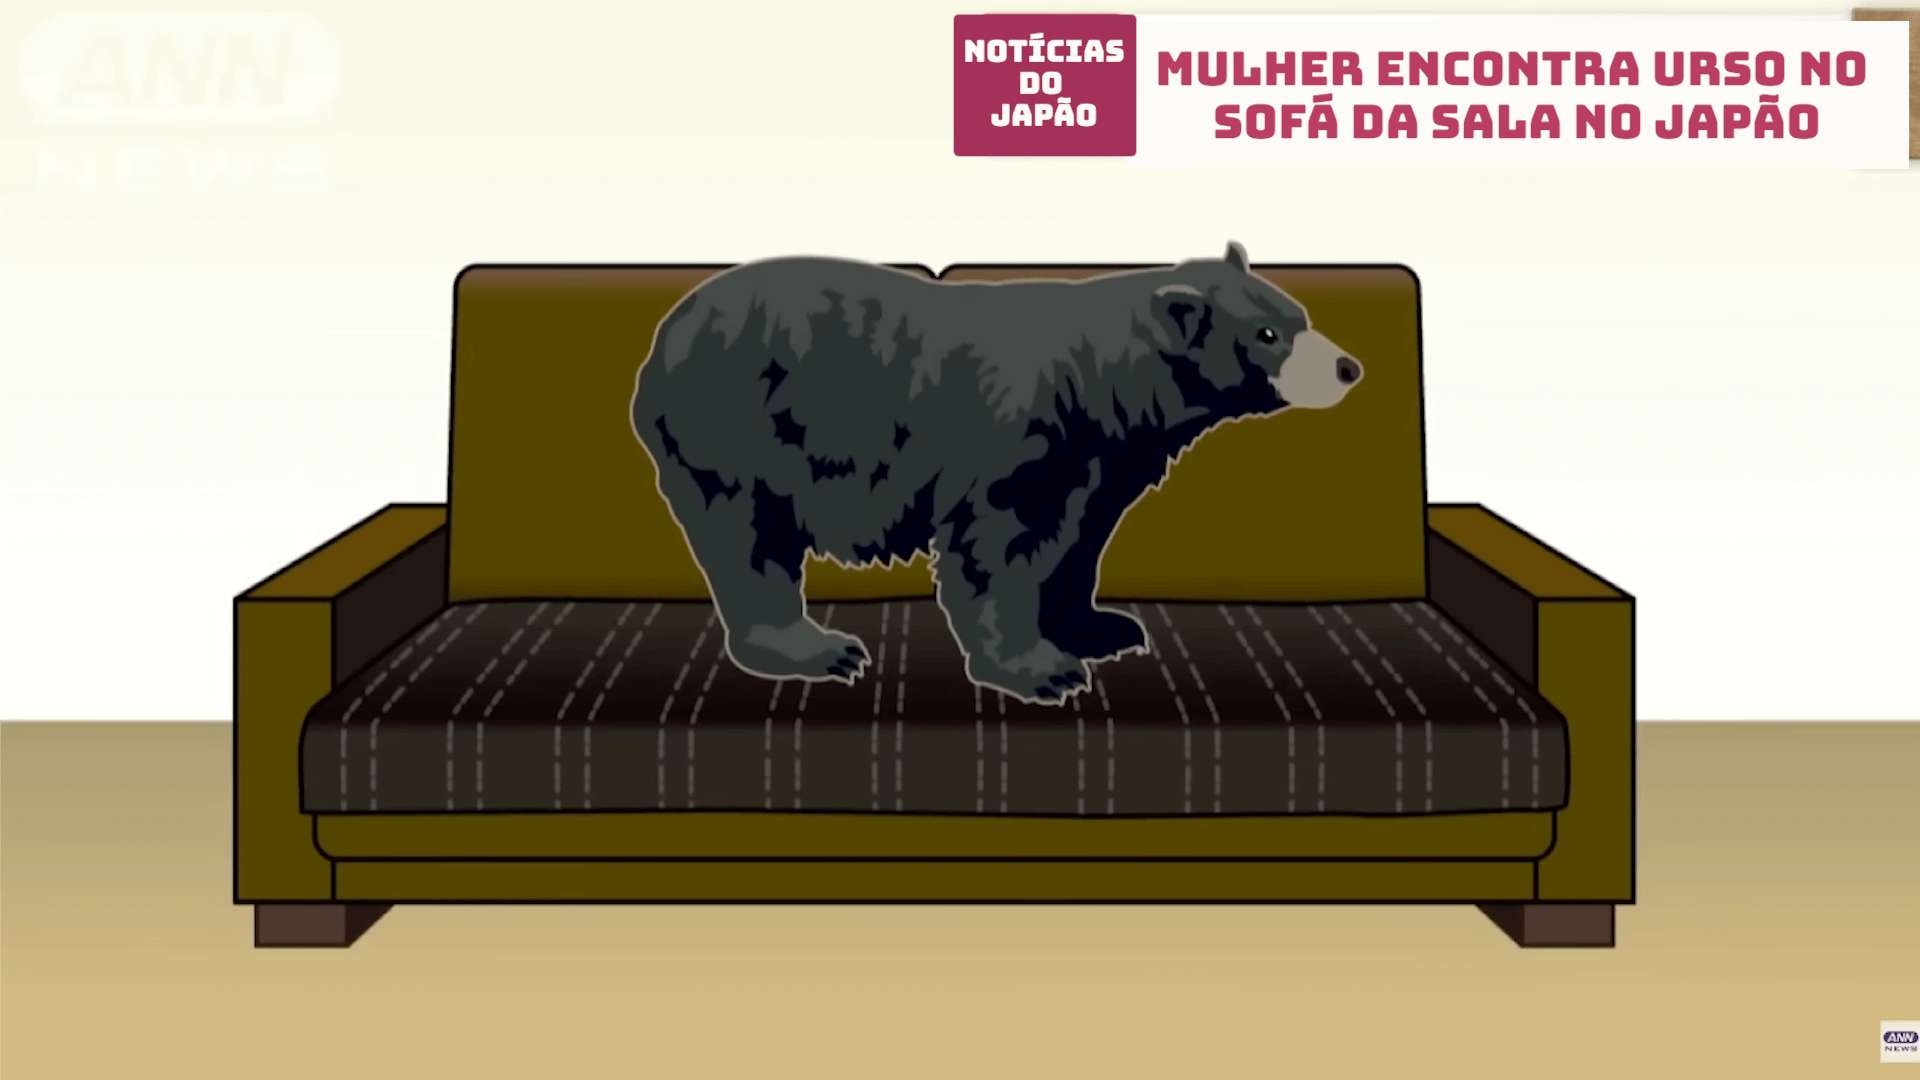 Mulher encontra urso no sofá da sala no Japão 